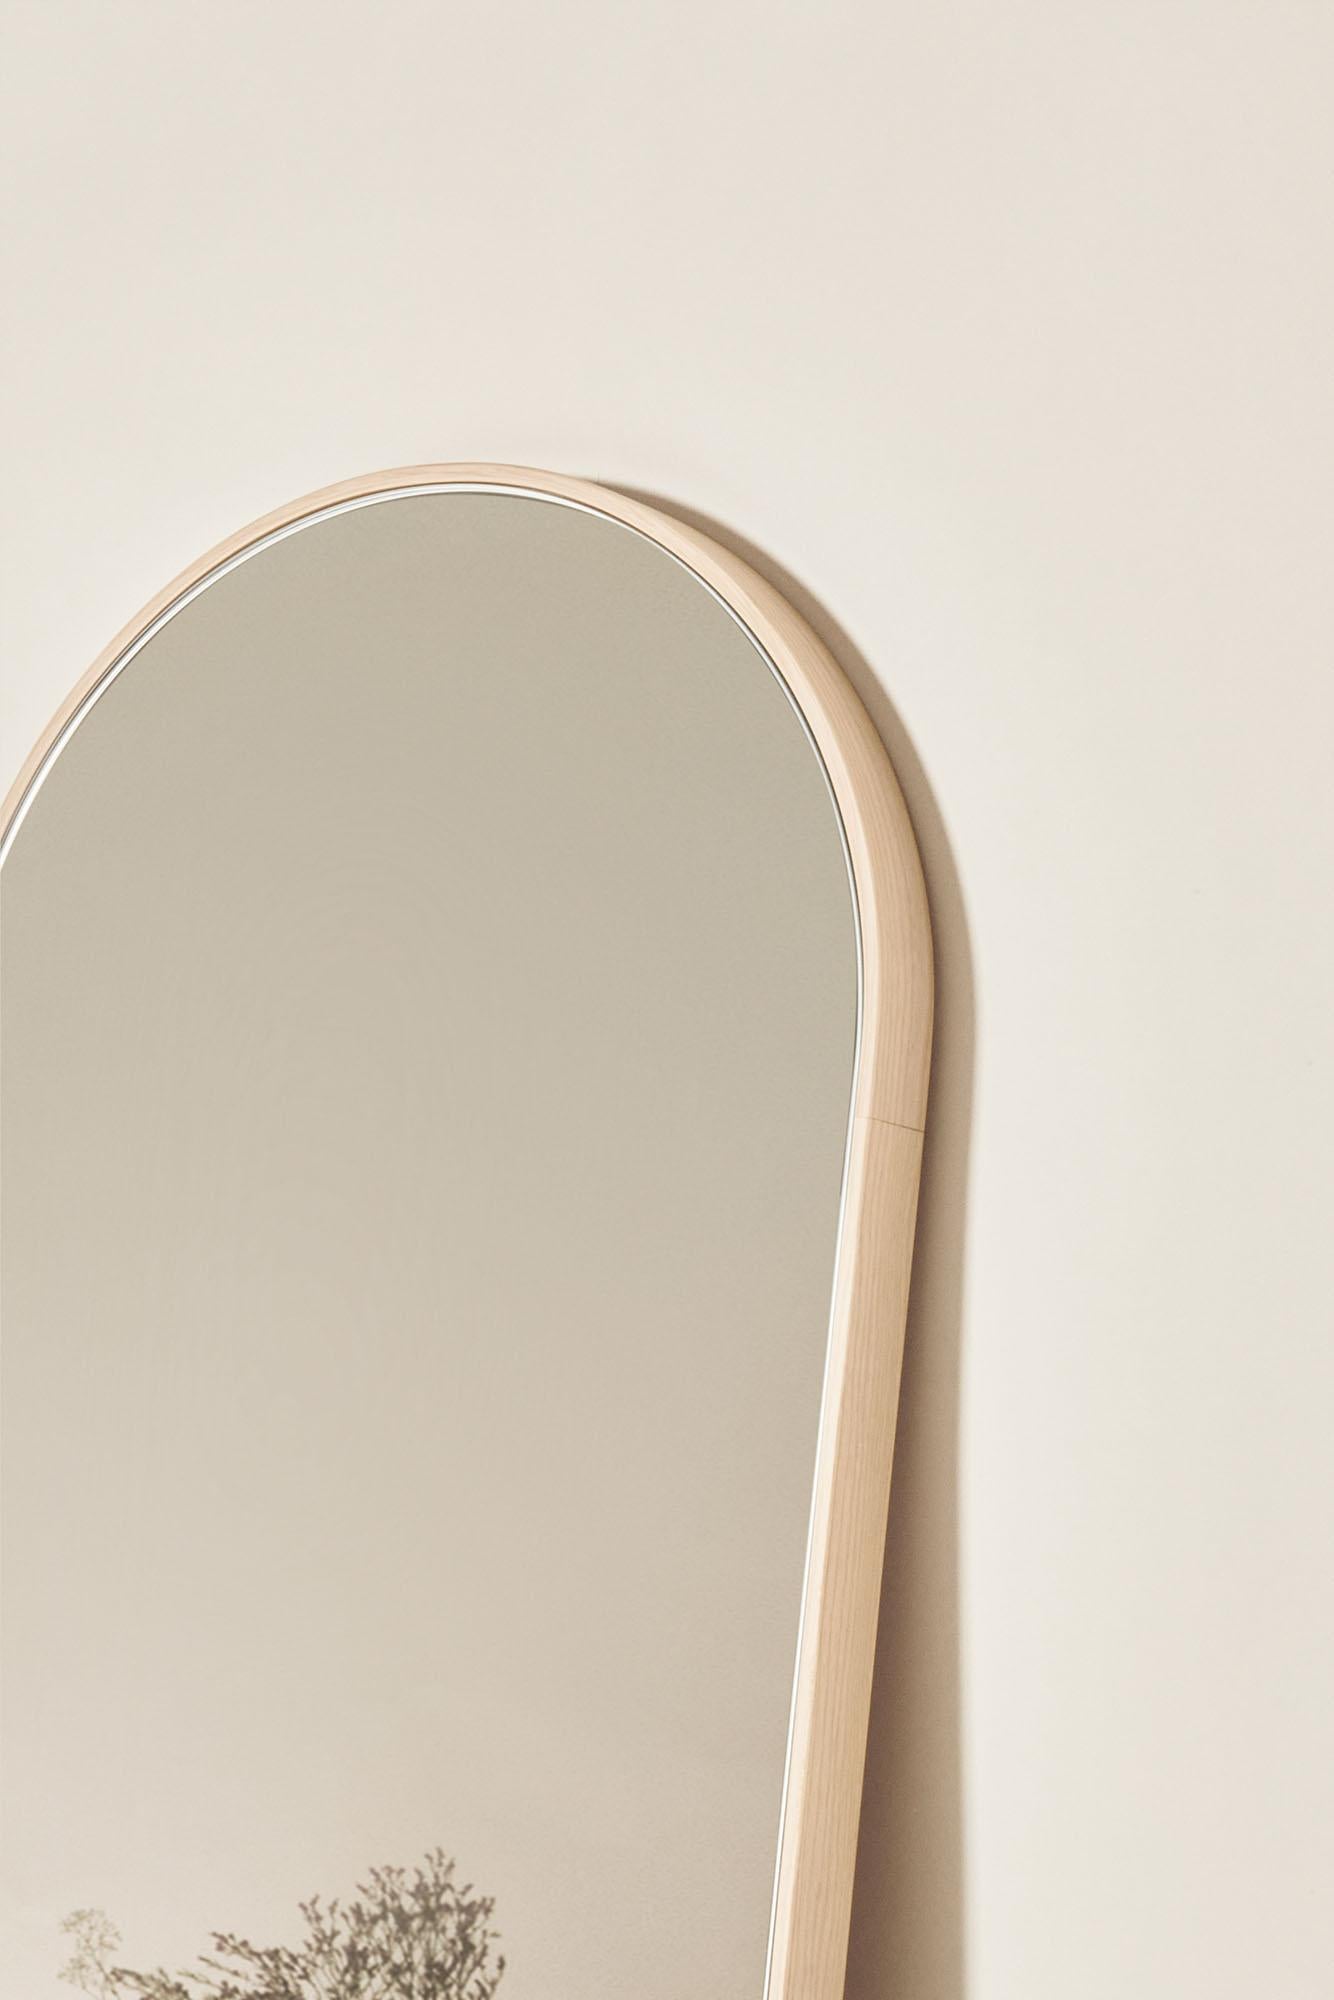 Tutto Sesto Solid Wood Oval mirror, Ash in Natural Finish, Contemporary In New Condition For Sale In Cadeglioppi de Oppeano, VR